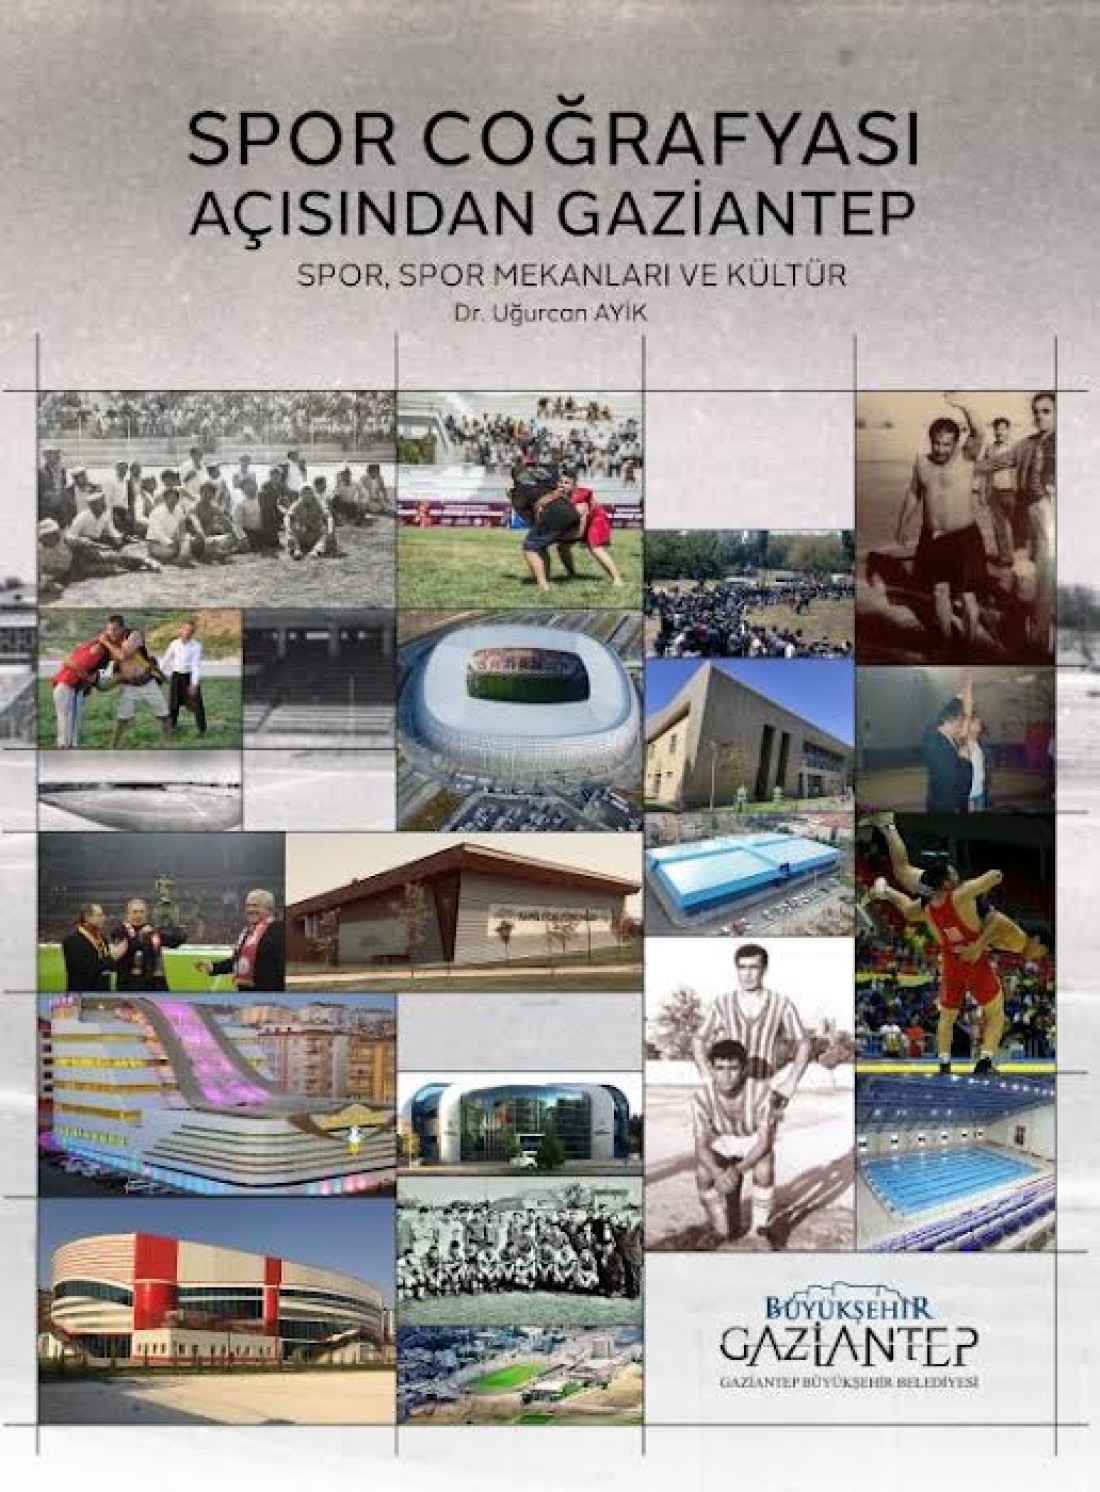 Büyükşehir Tarafından “Spor Coğrafyası Açısından Gaziantep” Adlı Elektronik Kitap Yayımlandı